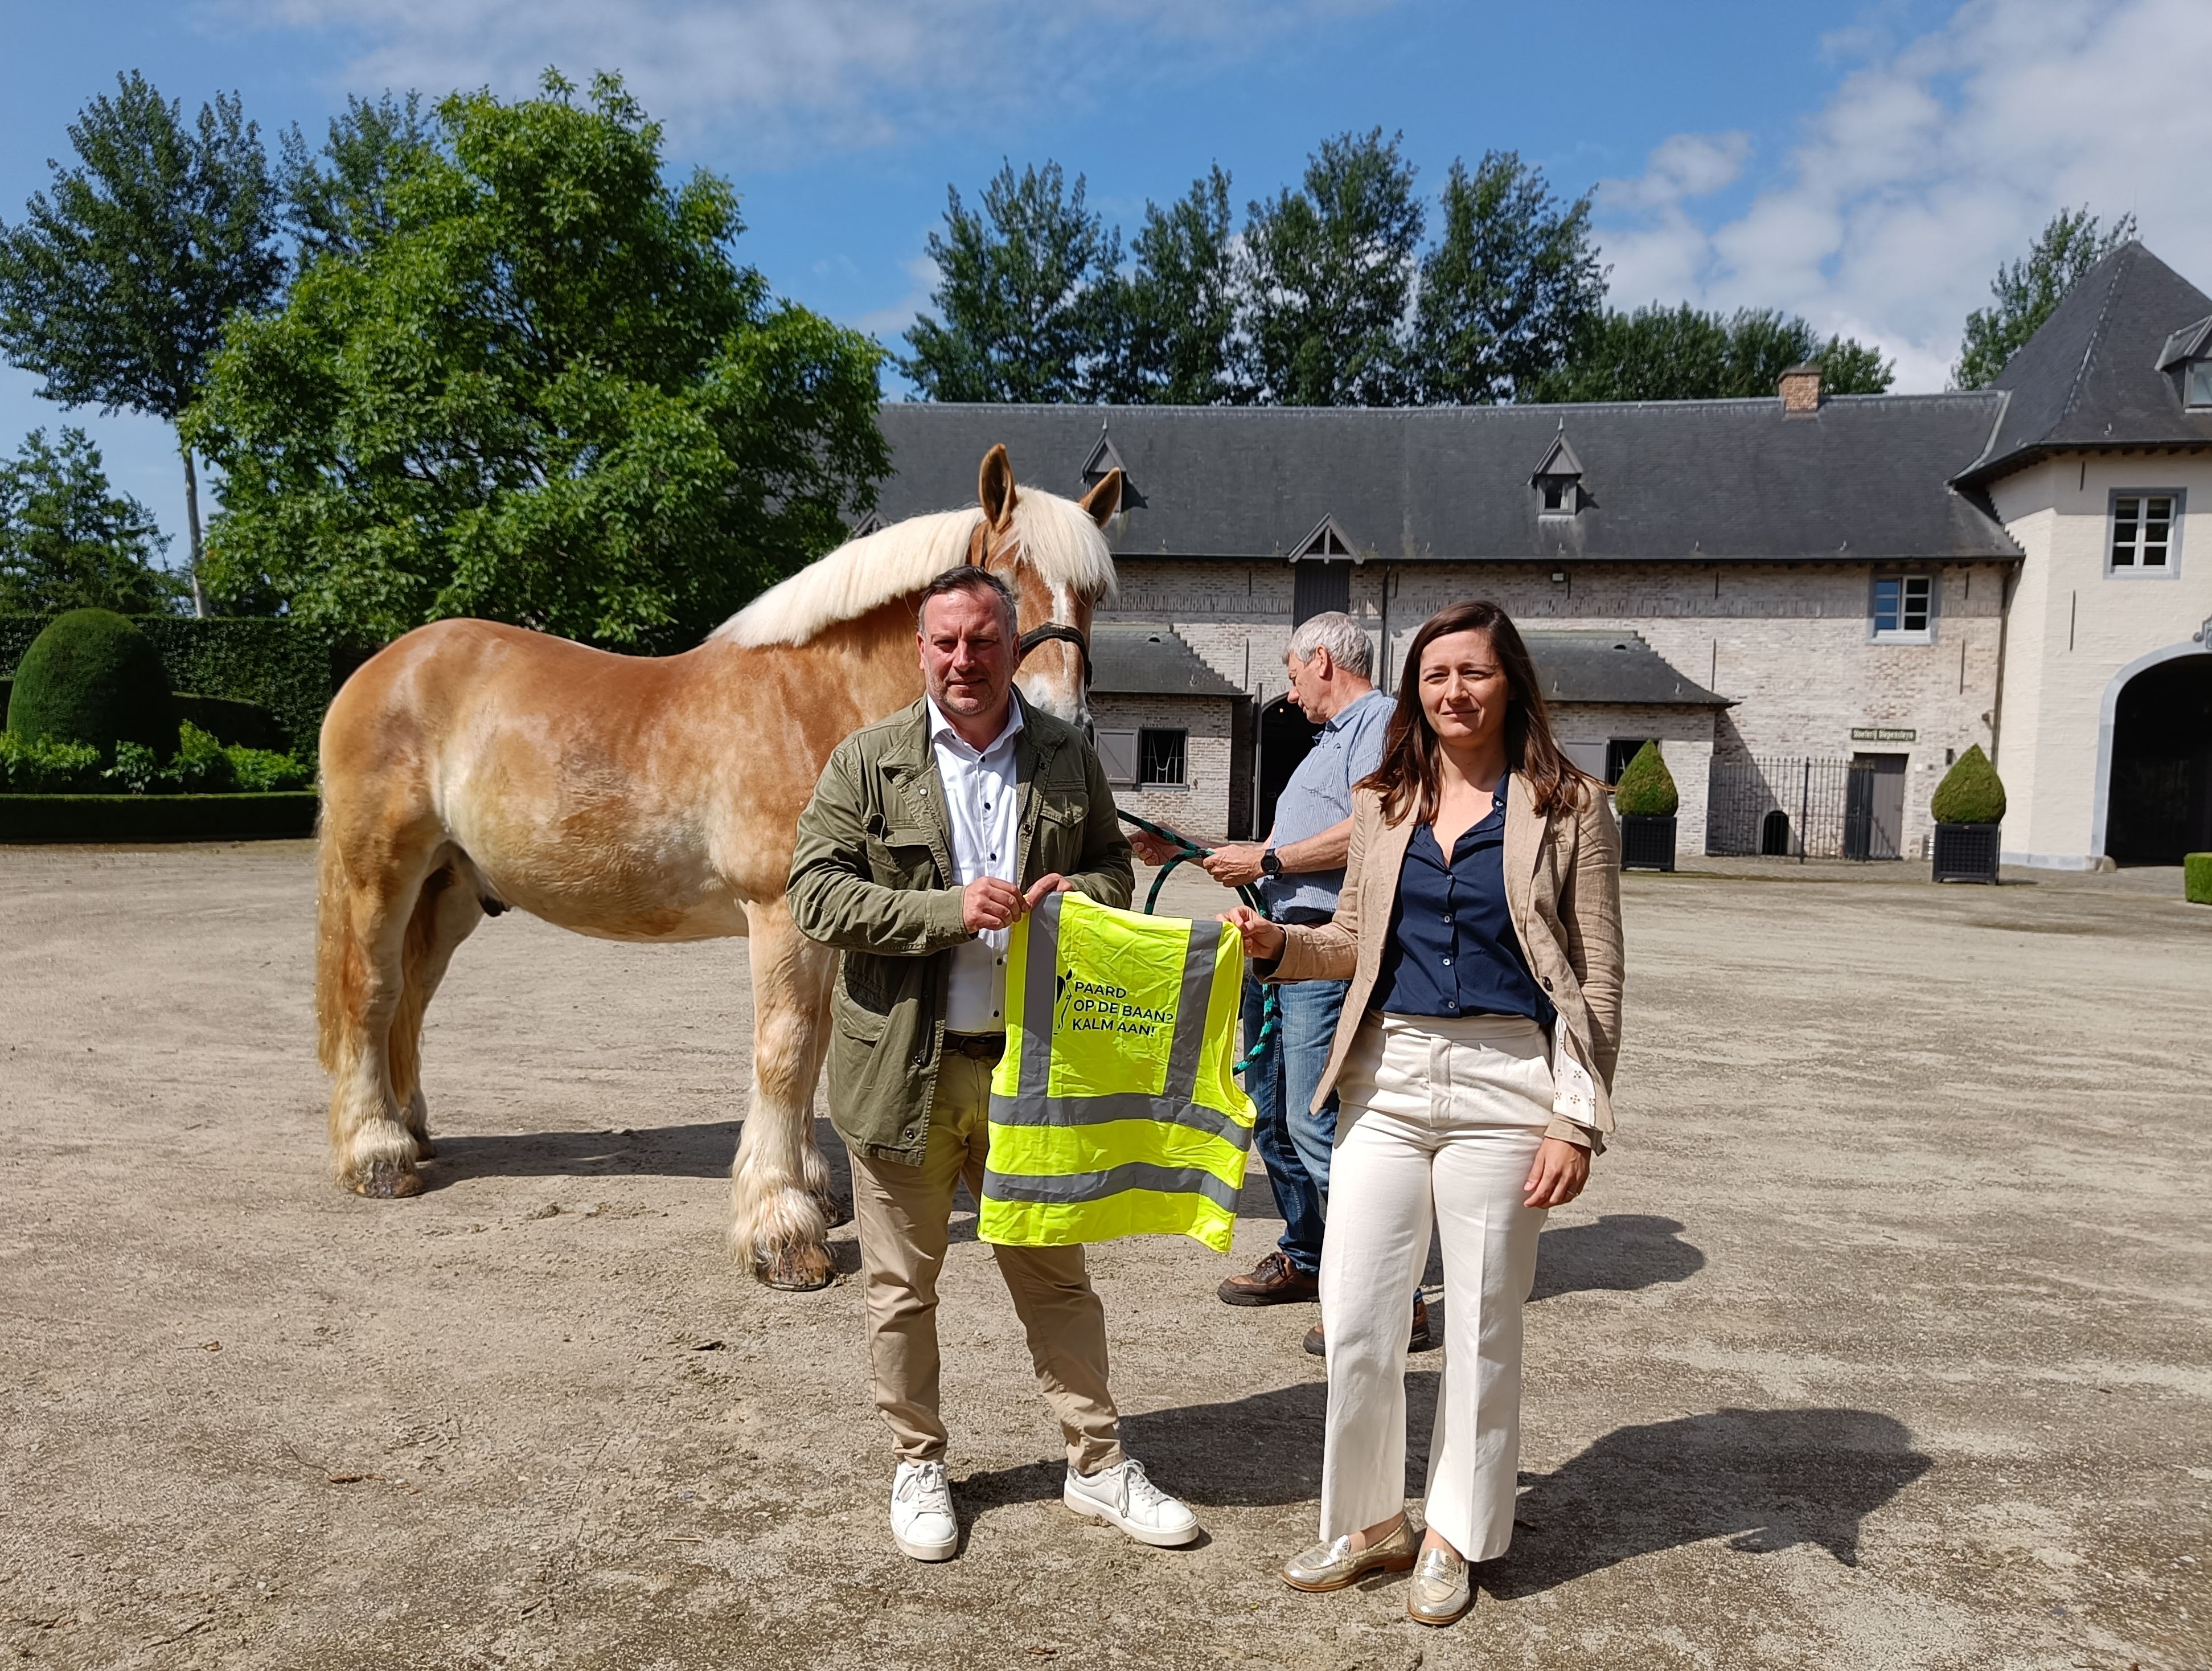 Op 5 juni stelden gedeputeerde Gunther Coppens en Emely Feys, directeur van PaardenPunt Vlaanderen, de campagne 'Paard op de baan? Kalm aan!' voor.